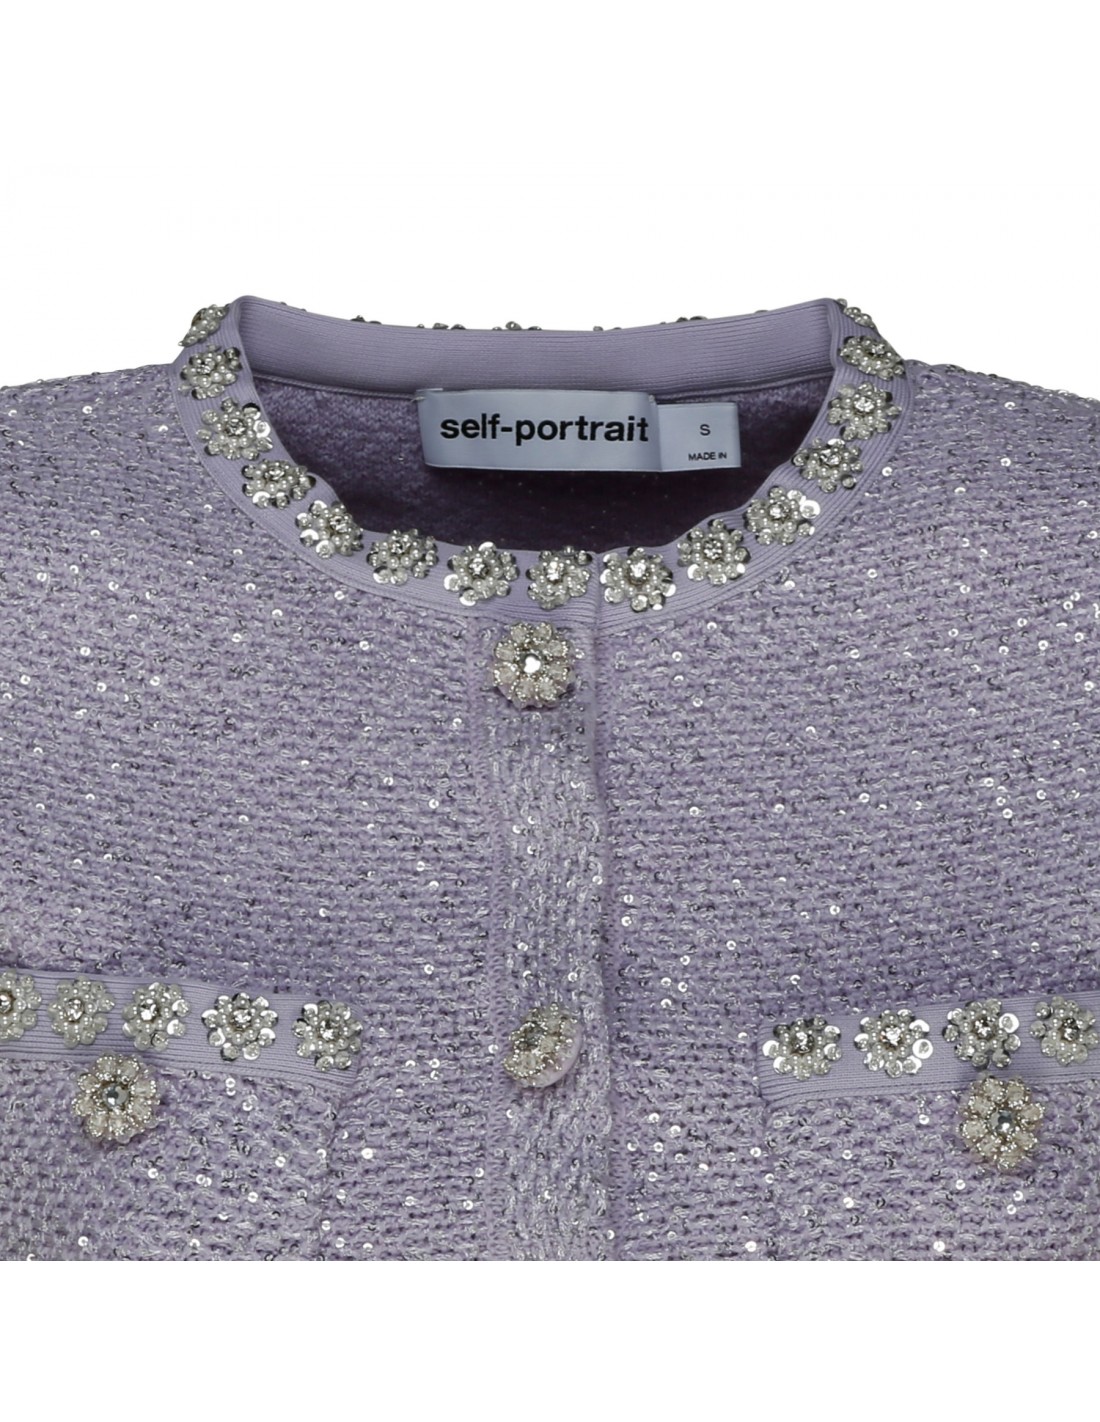 Lilac sequin knit mini dress